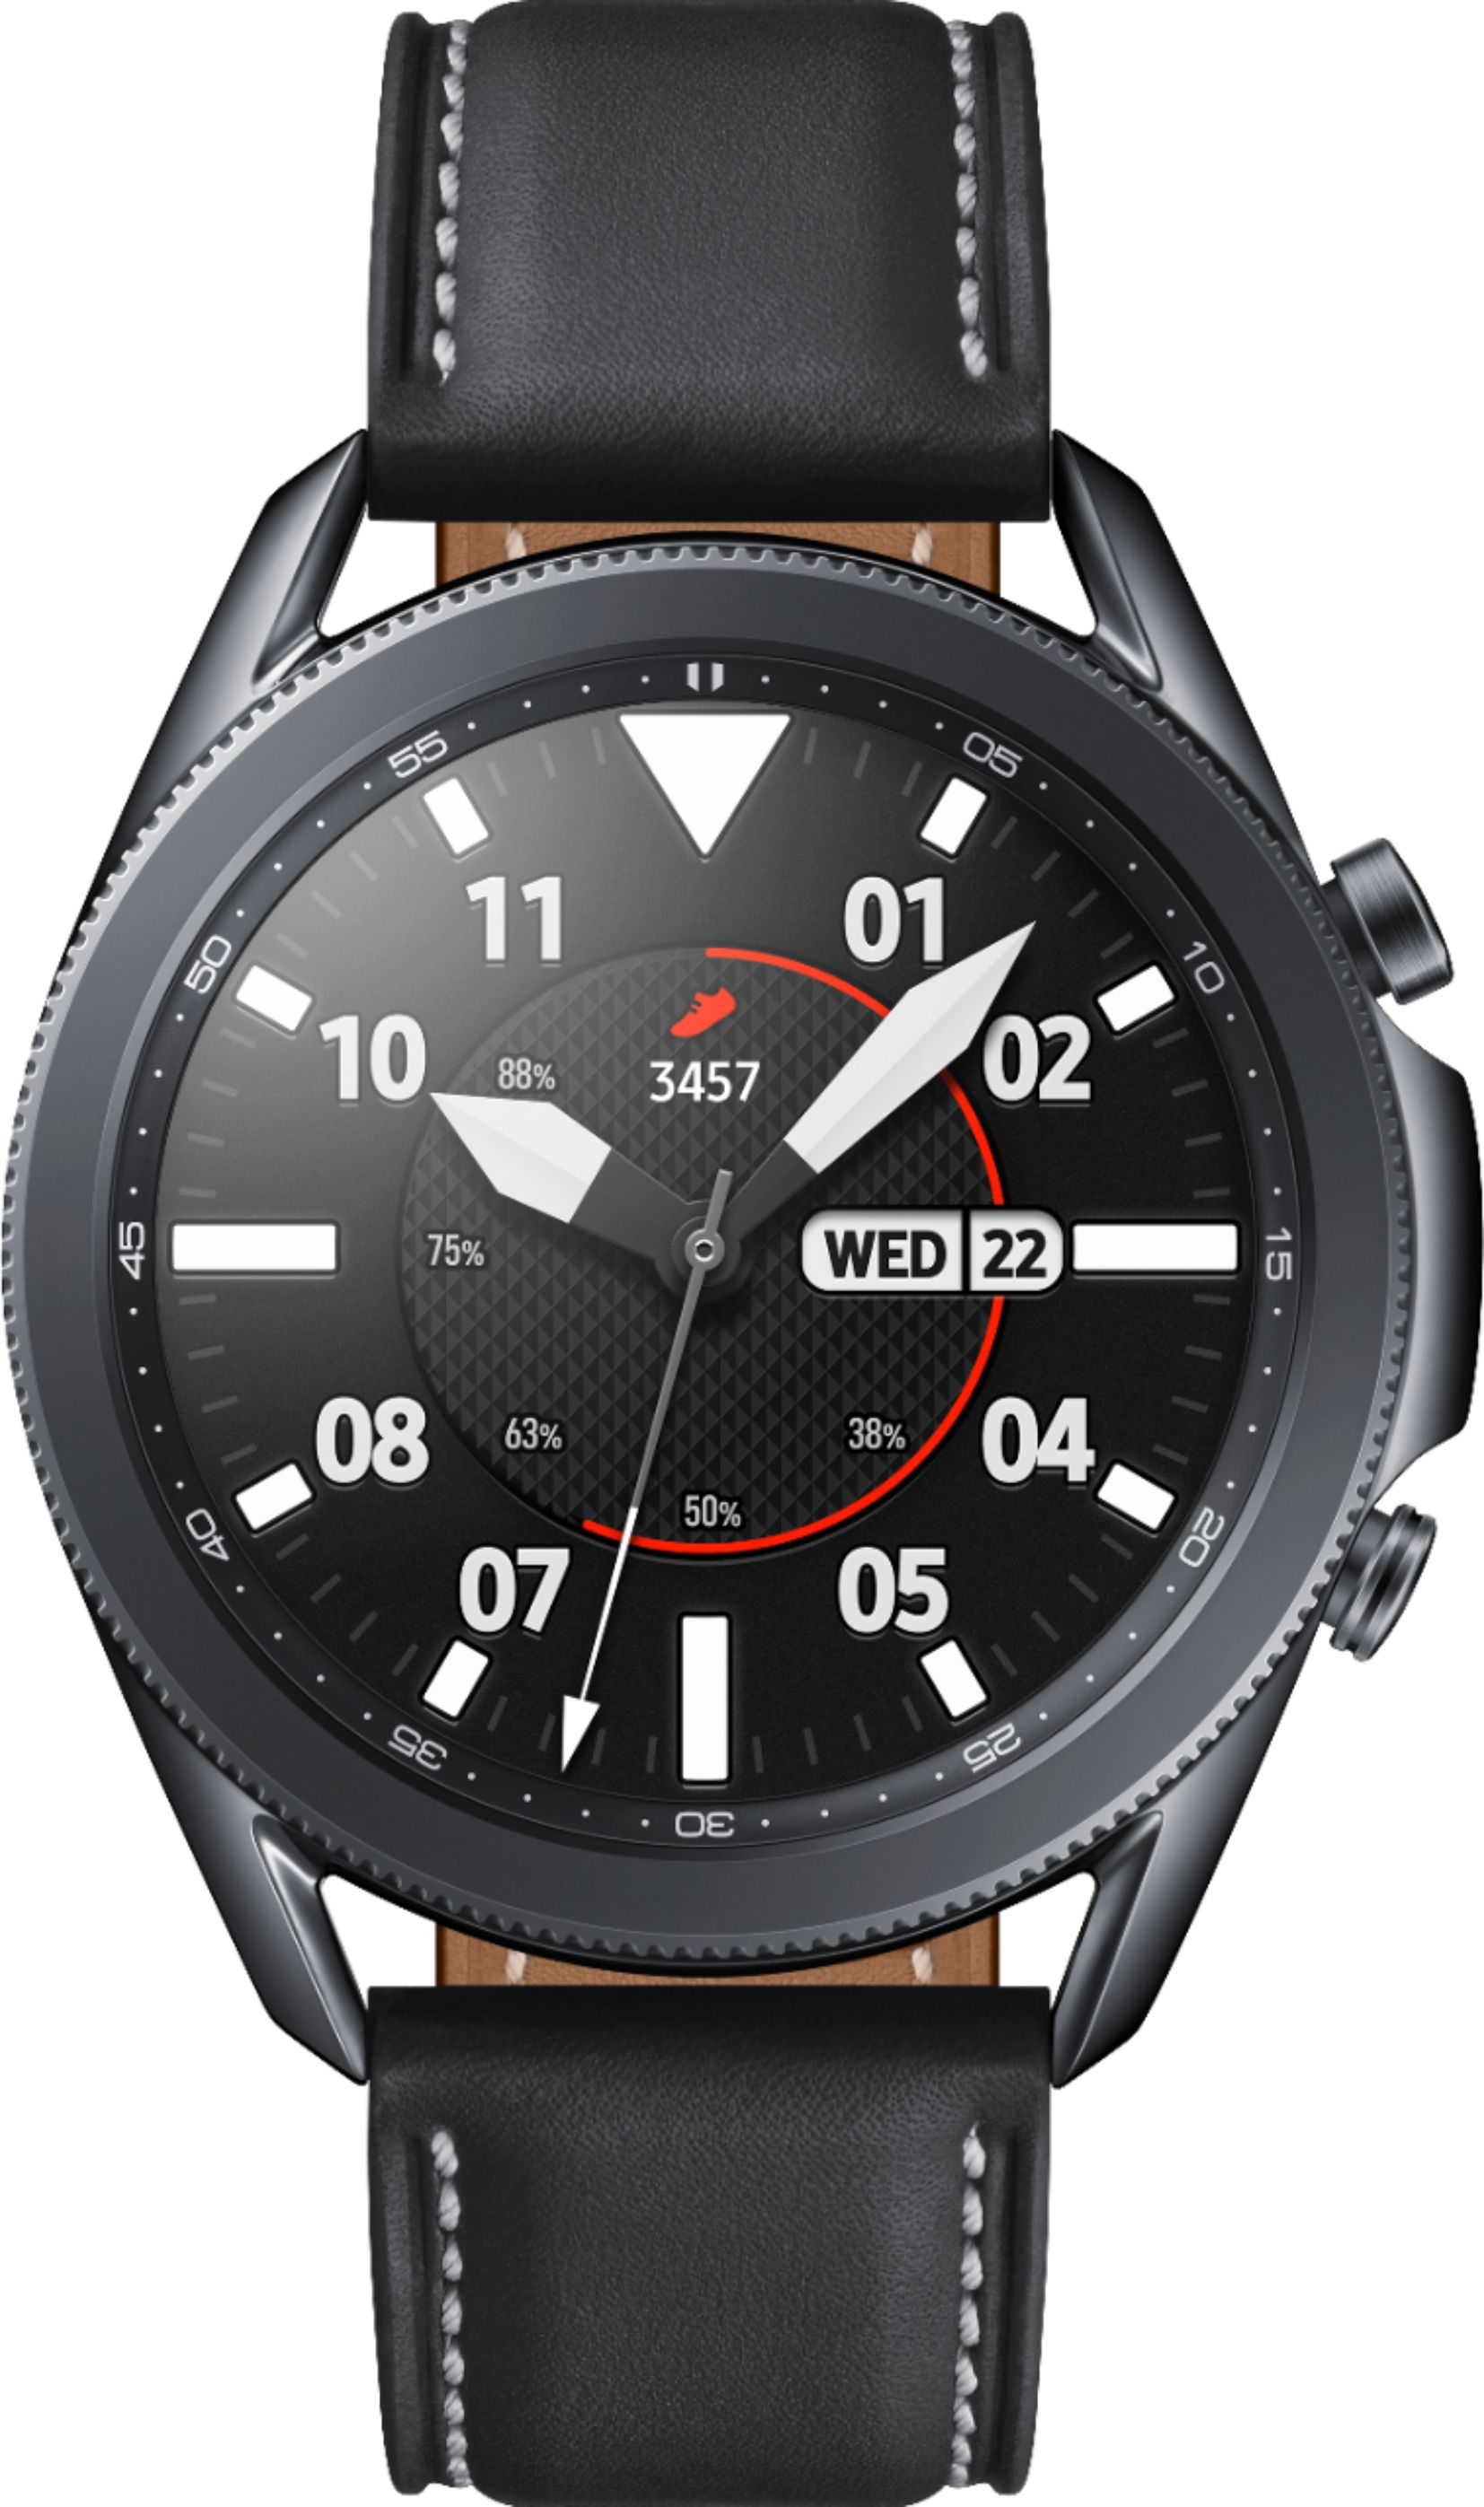 Samsung - Galaxy Watch3 Smartwatch 45mm Stainless BT - Mystic Black